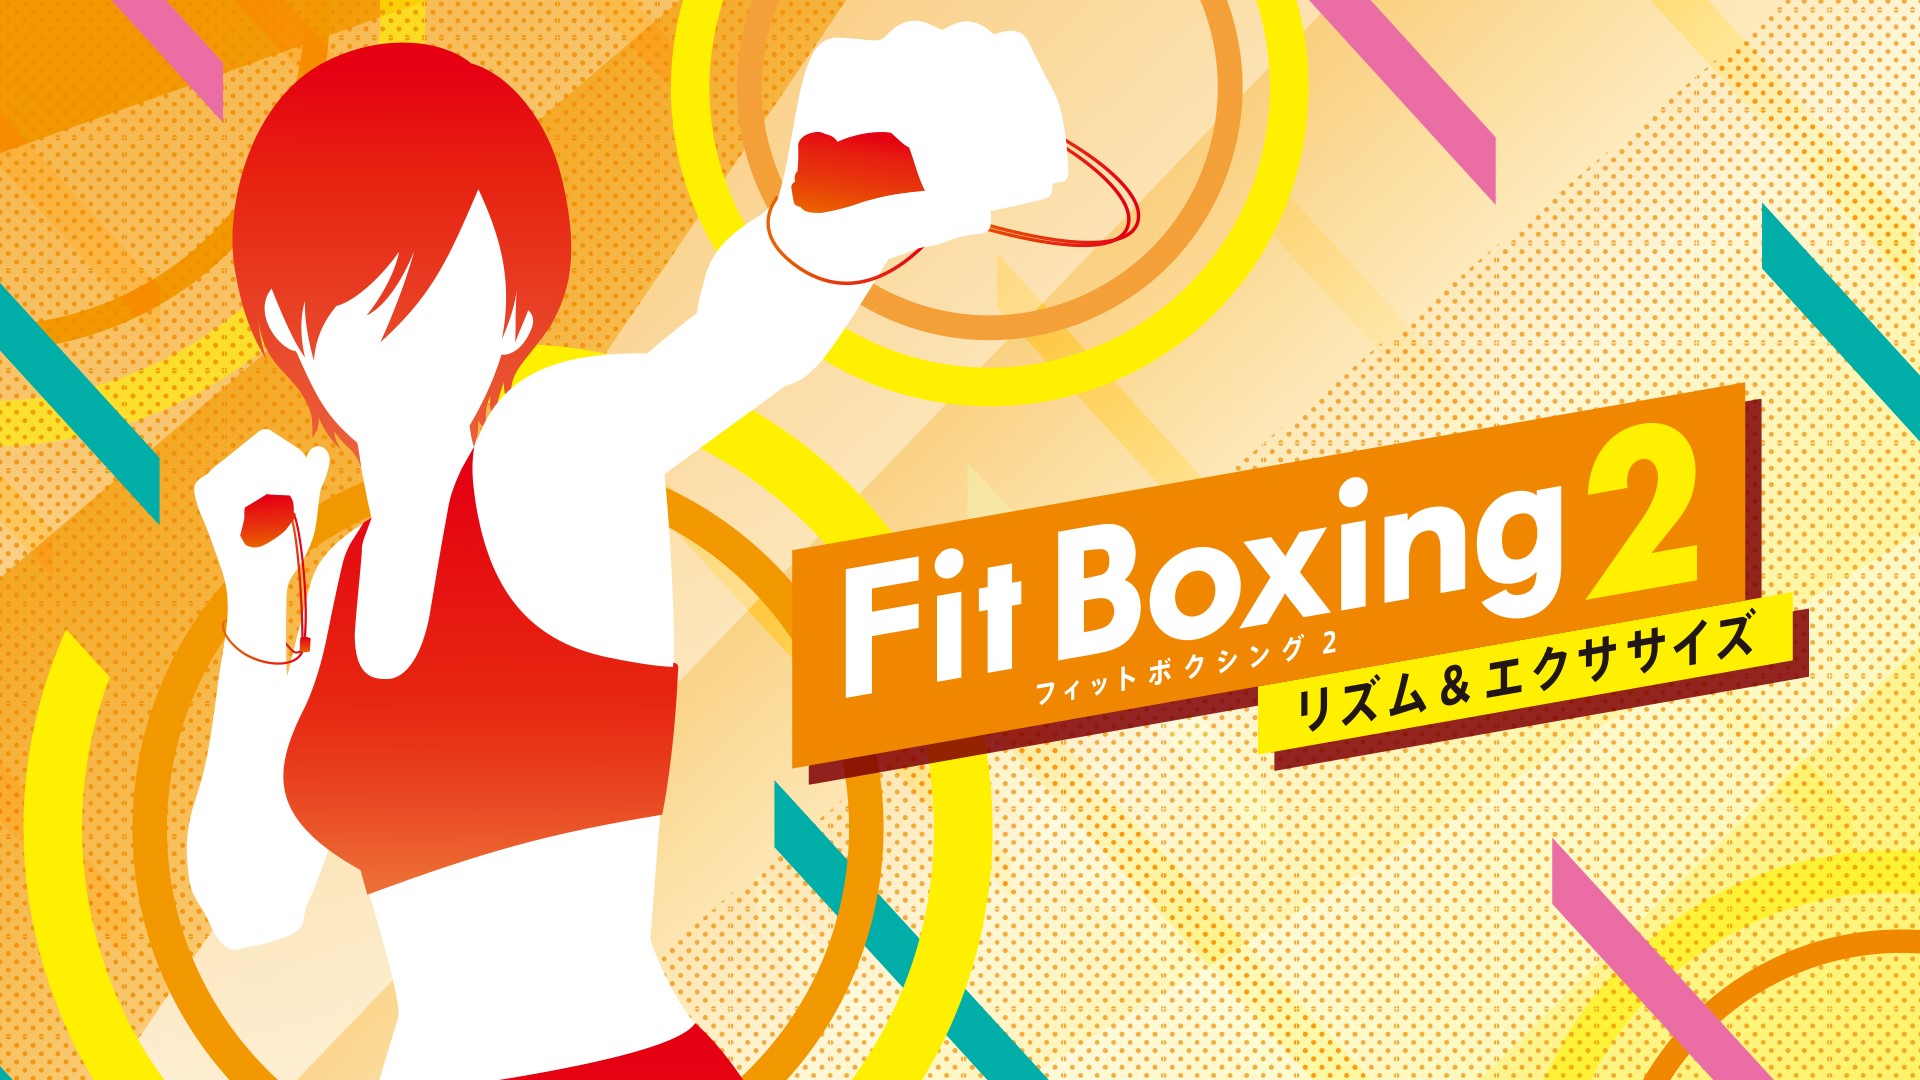 Fit Boxing2 BGM アニソンパックVol.2 1